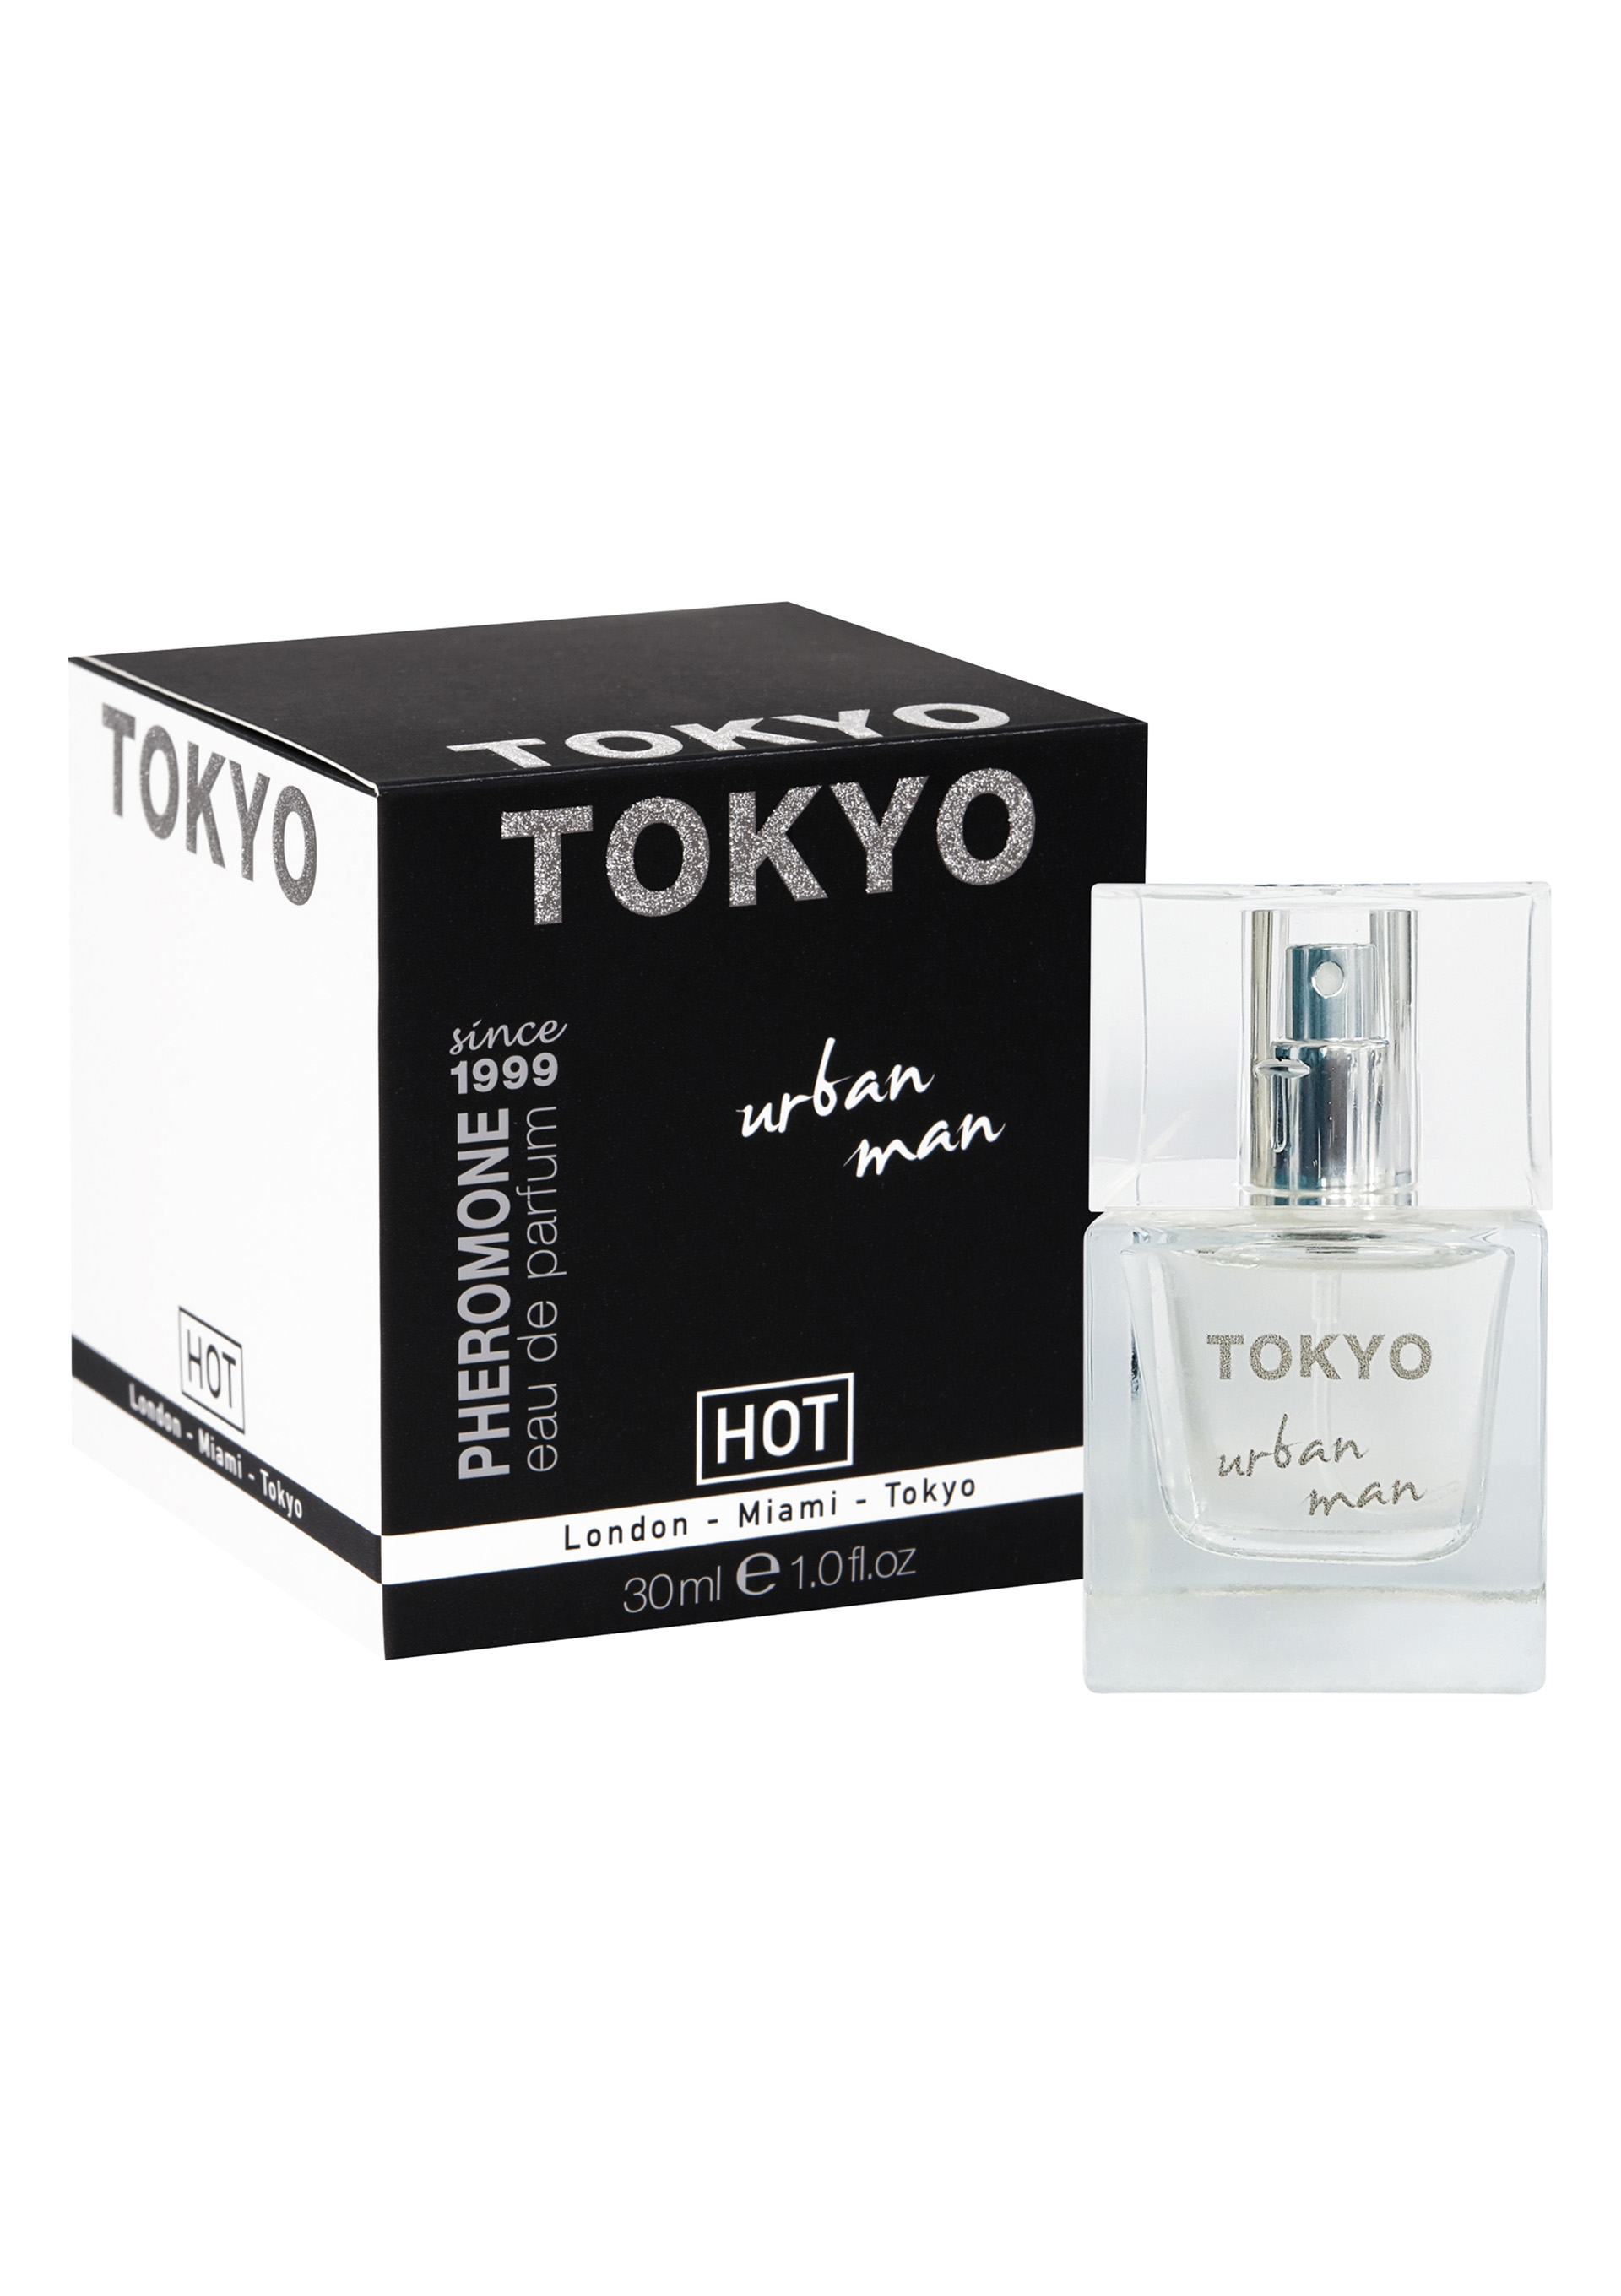 HOT Pheromon Parfum TOKYO urban man.